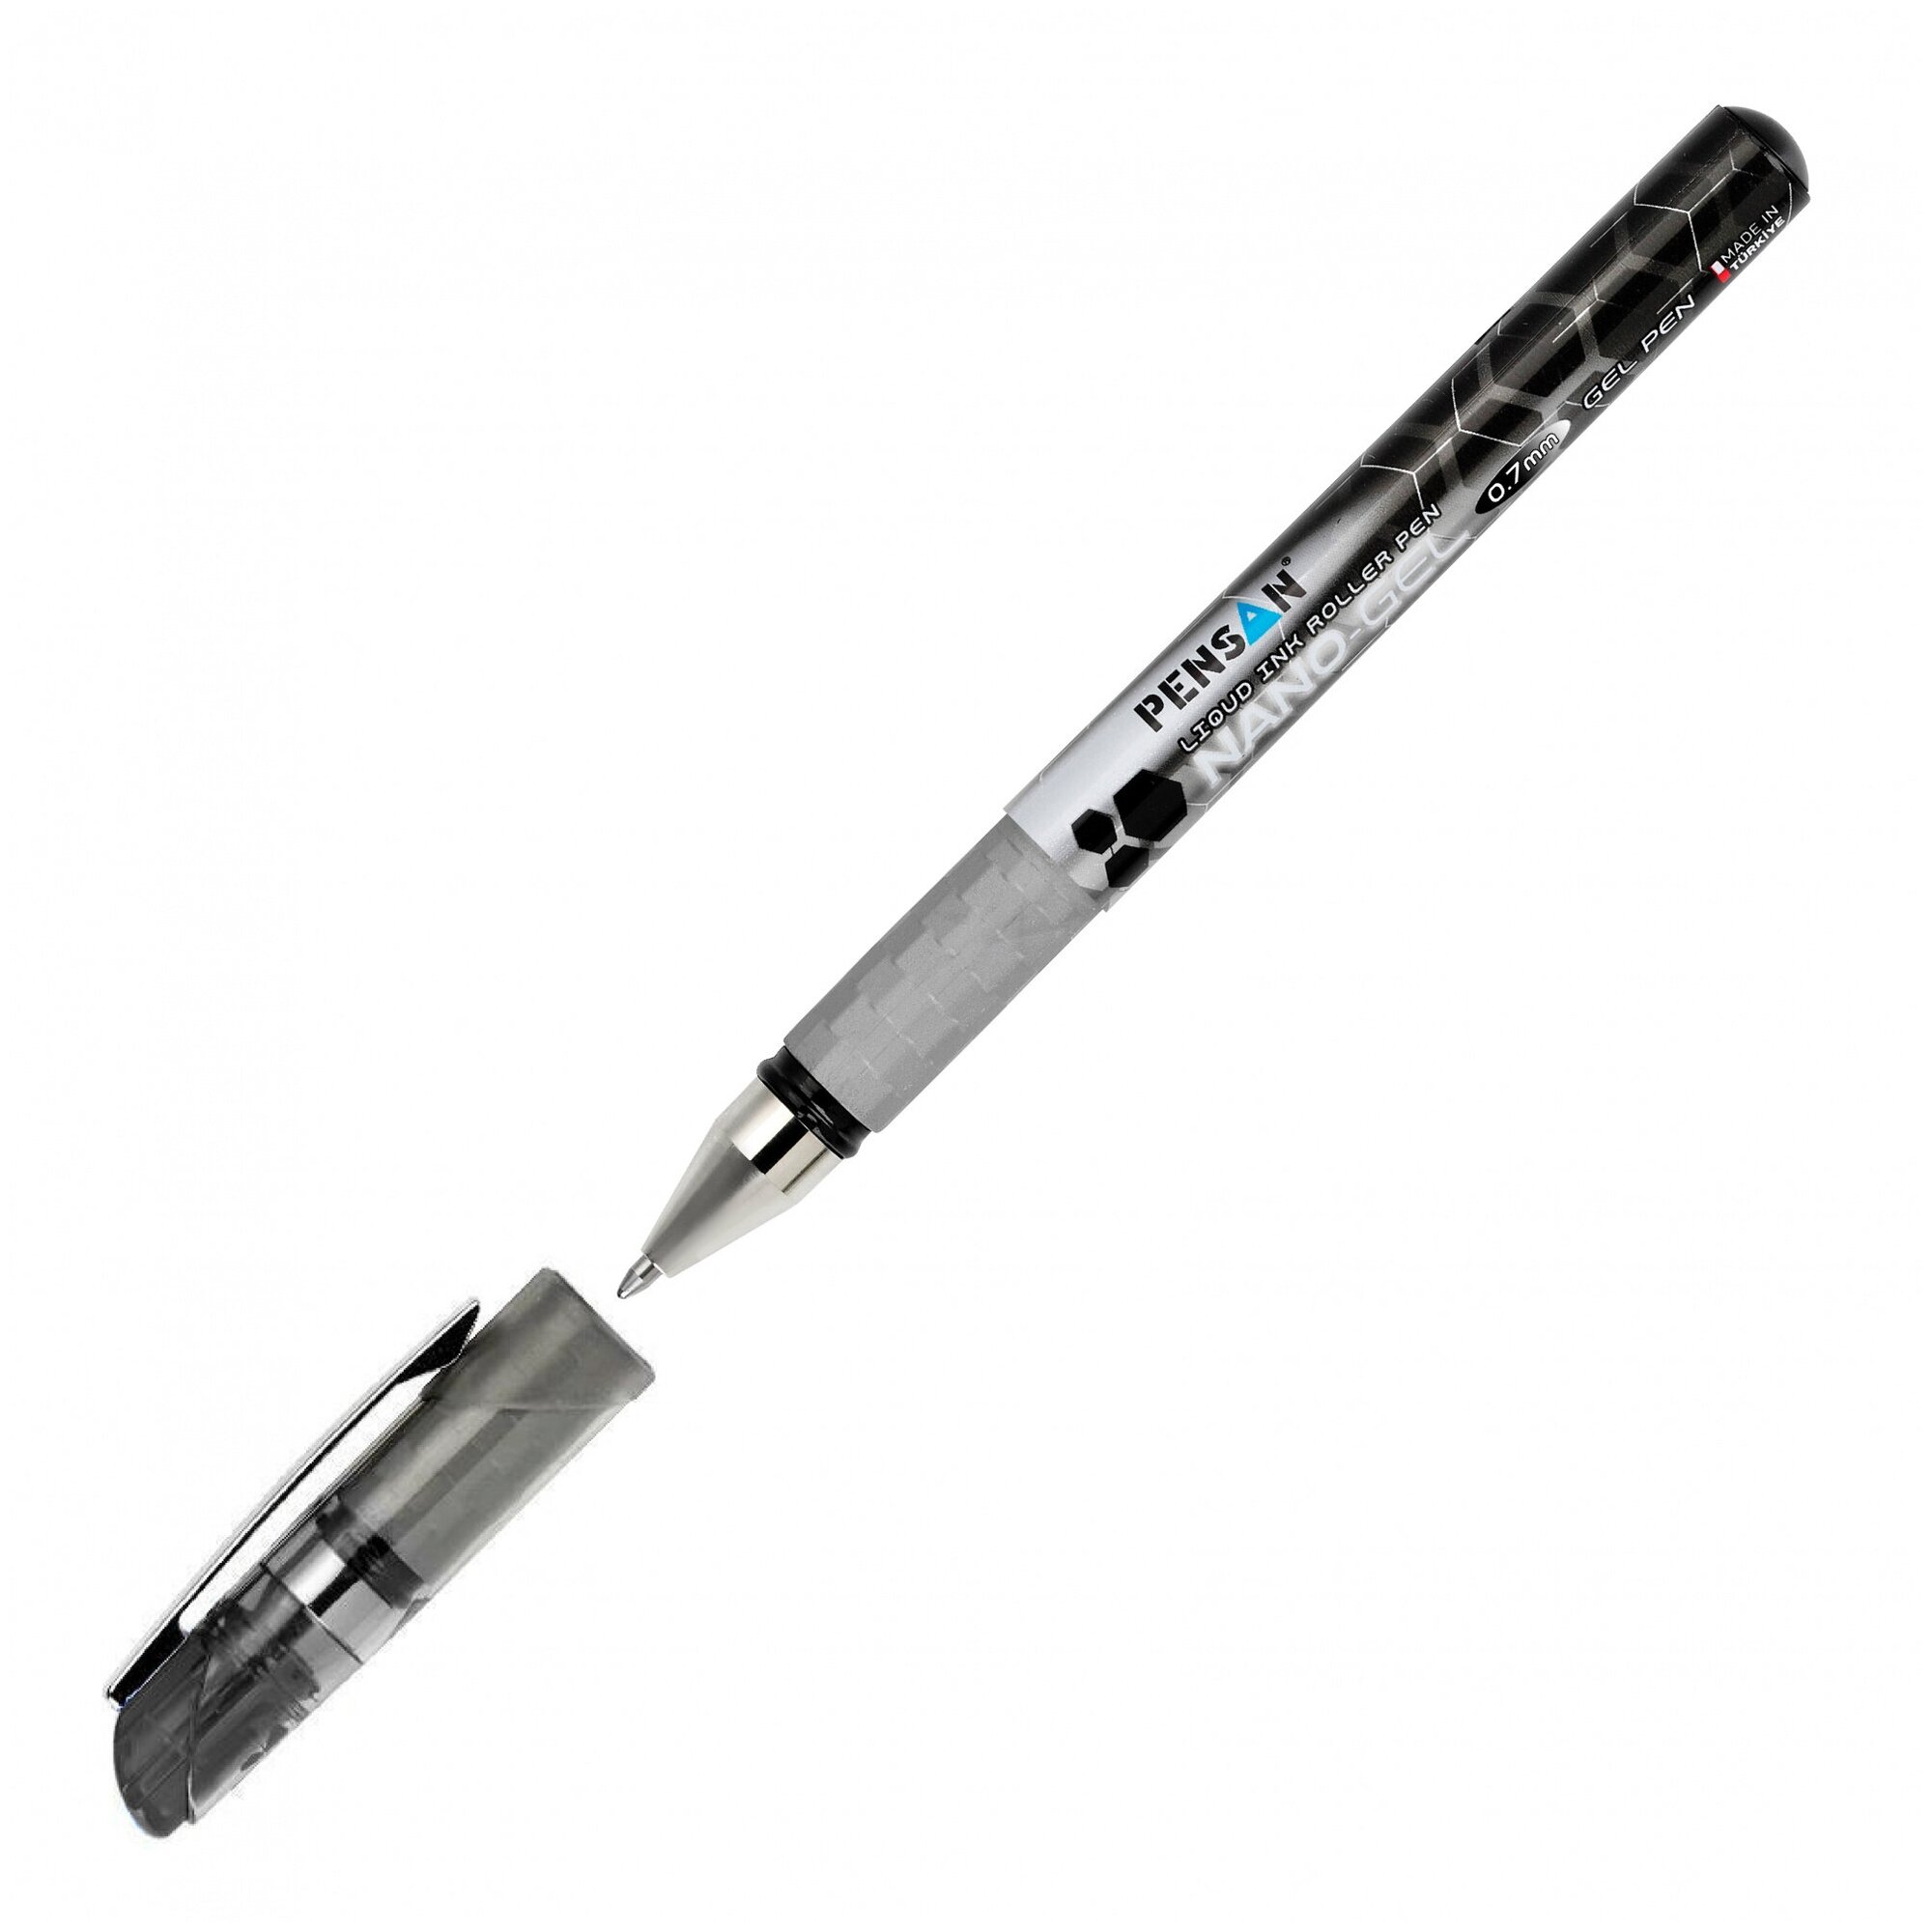 Ручка гелевая Pensan Nano Gel (6020/12BLACK) серебристый диаметр 0.7мм черные чернила игловидный пишущий наконечник линия 0.5мм резиновая манжета